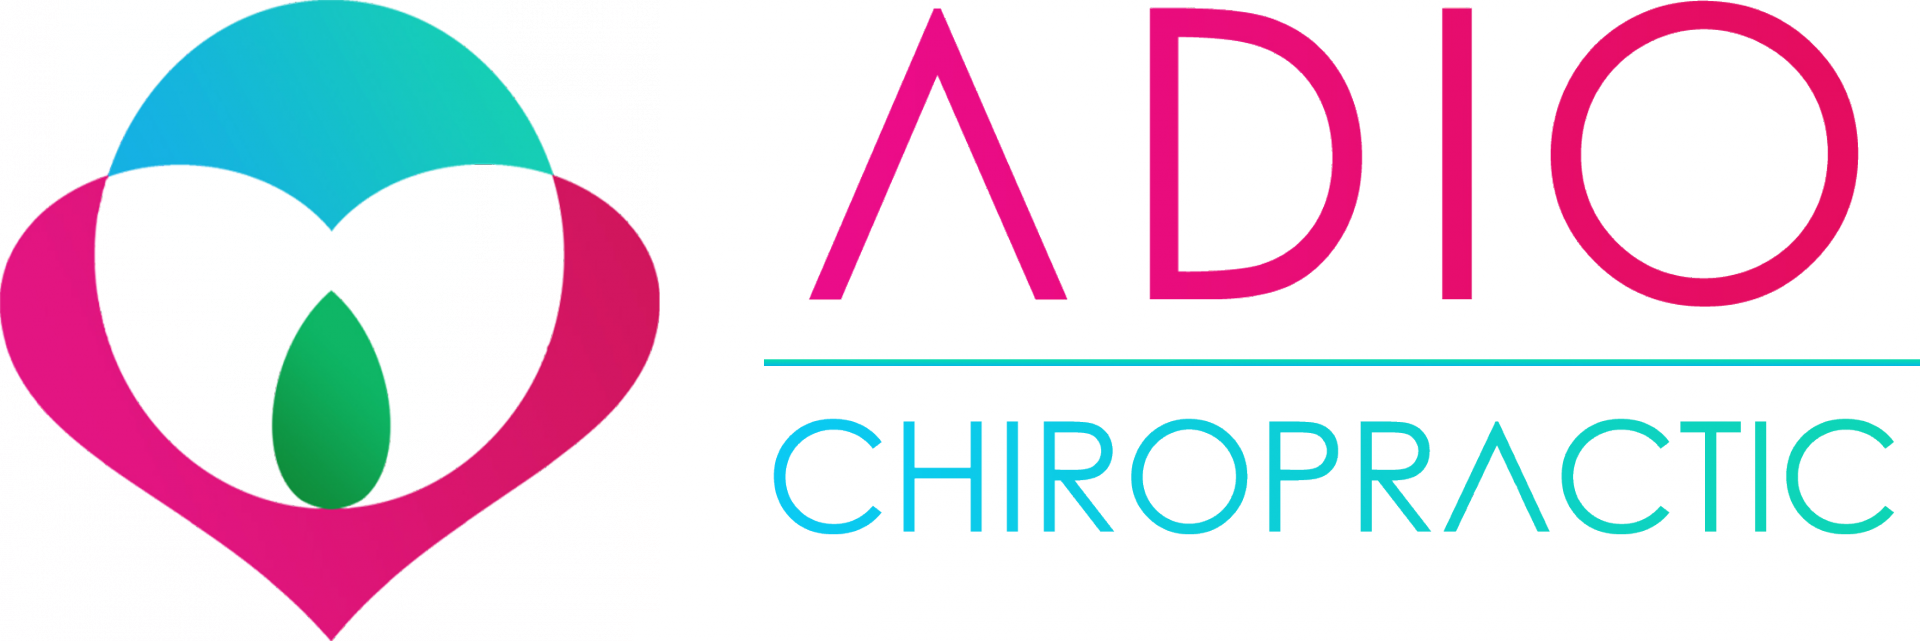 ADIO CHIROPRACTIC